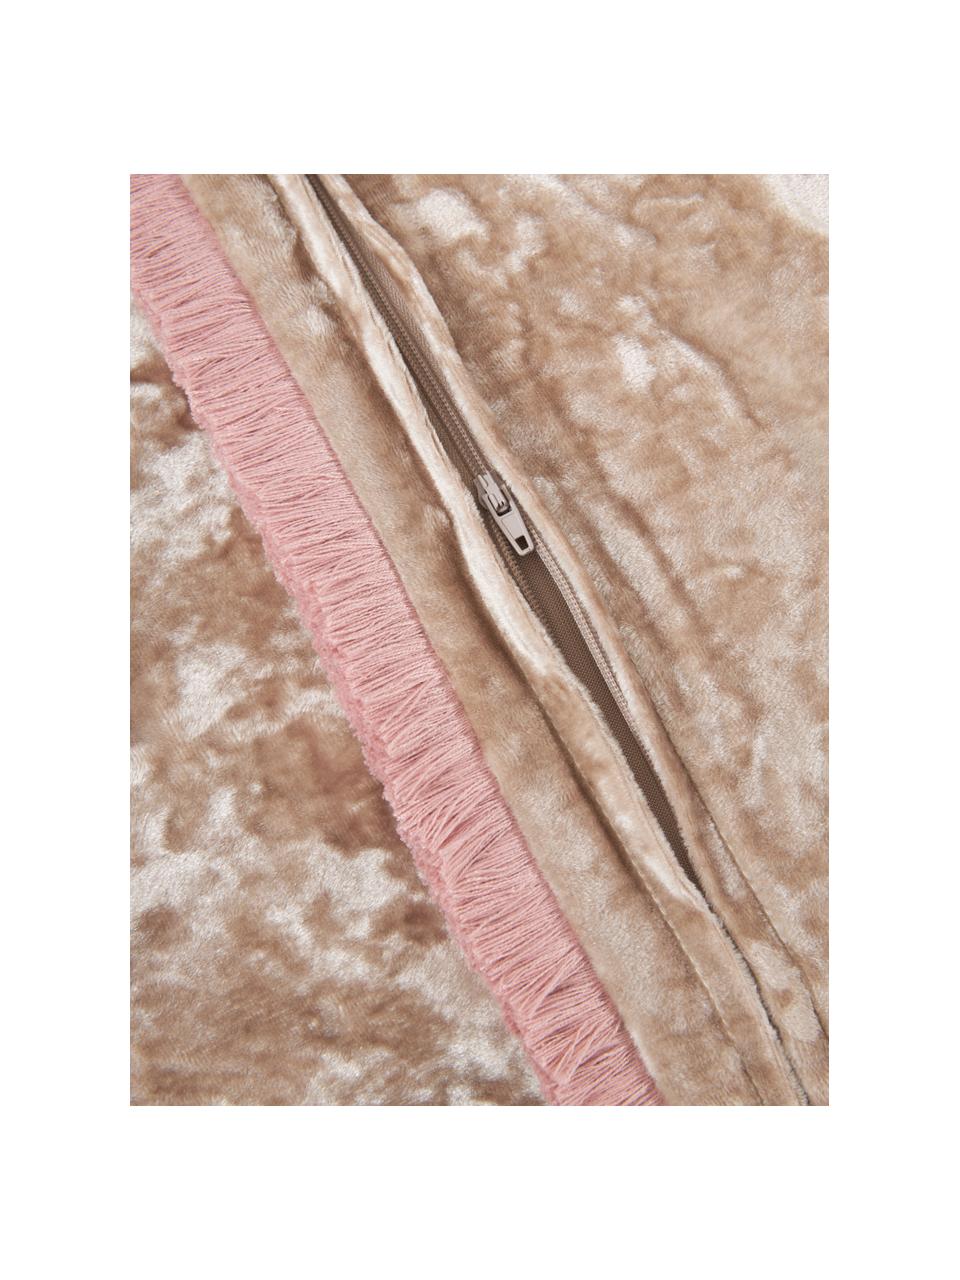 Federa arredo in velluto rosa cipria con frange Cyrus, Velluto (100% poliestere)
Oeko-Tex Standard 100, Classe 1, Beige, rosa, Larg. 40 x Lung. 40 cm